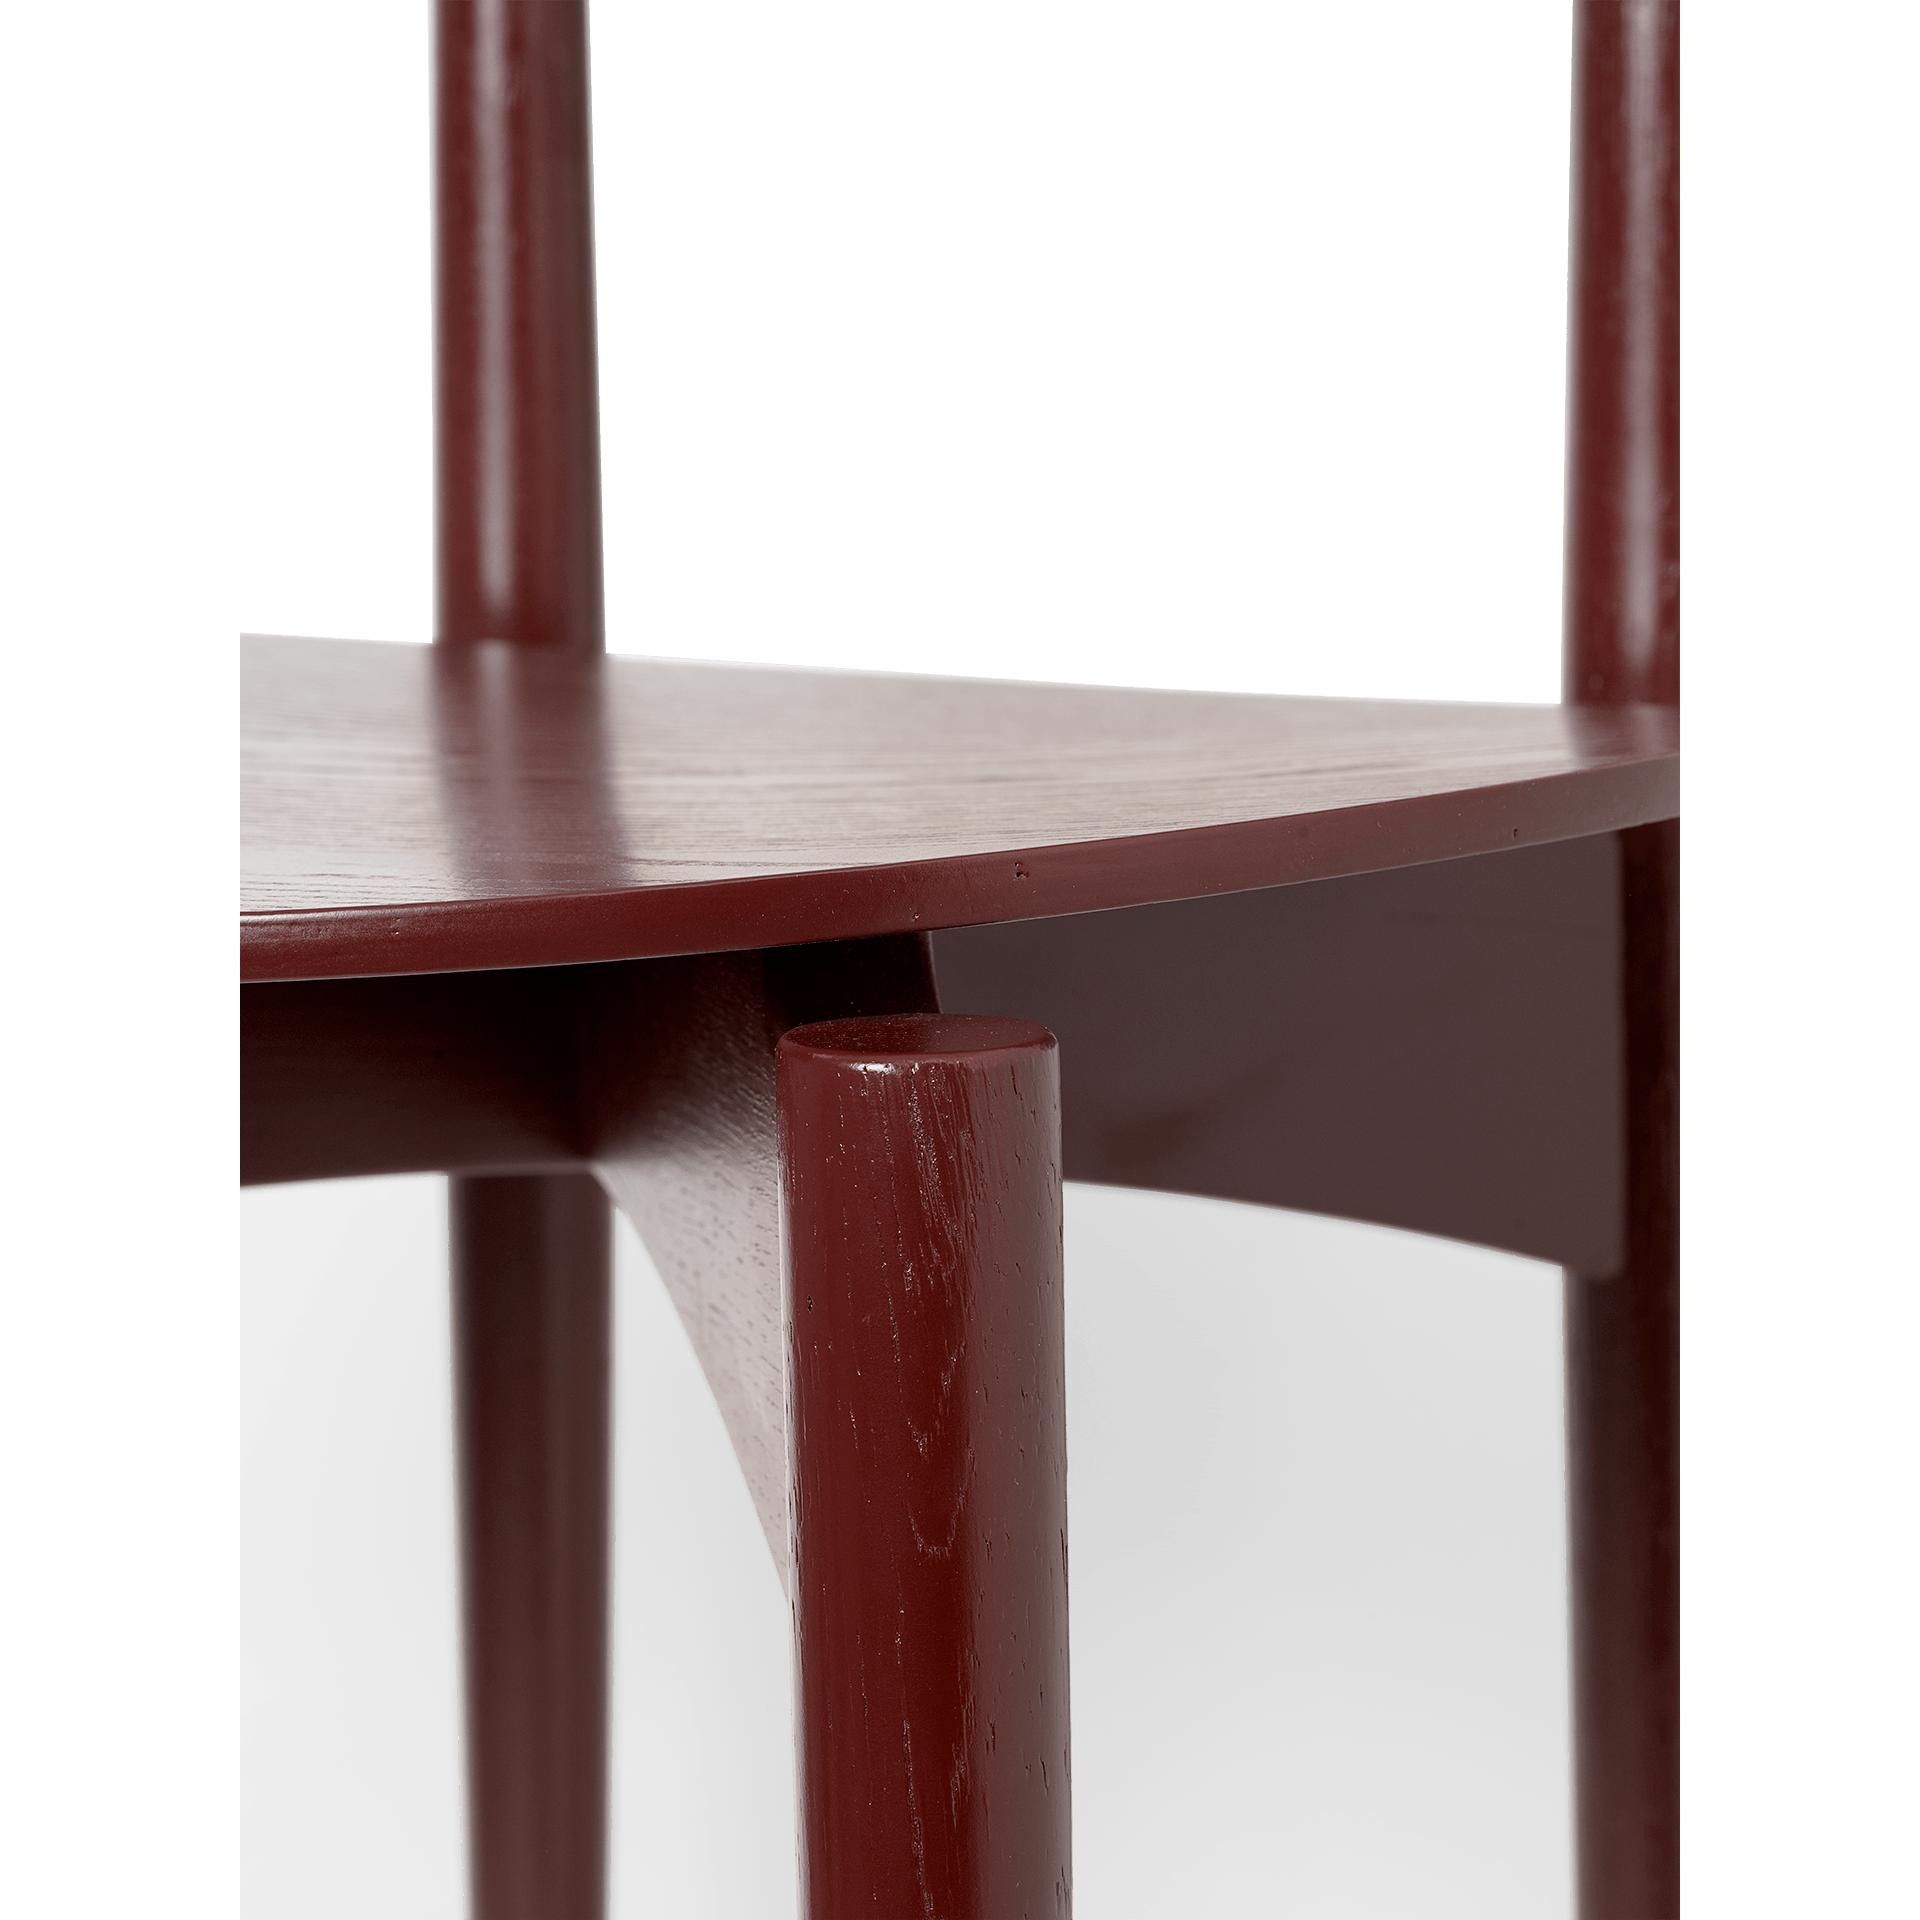 Fermin herman silla de comedor roble, marrón rojo